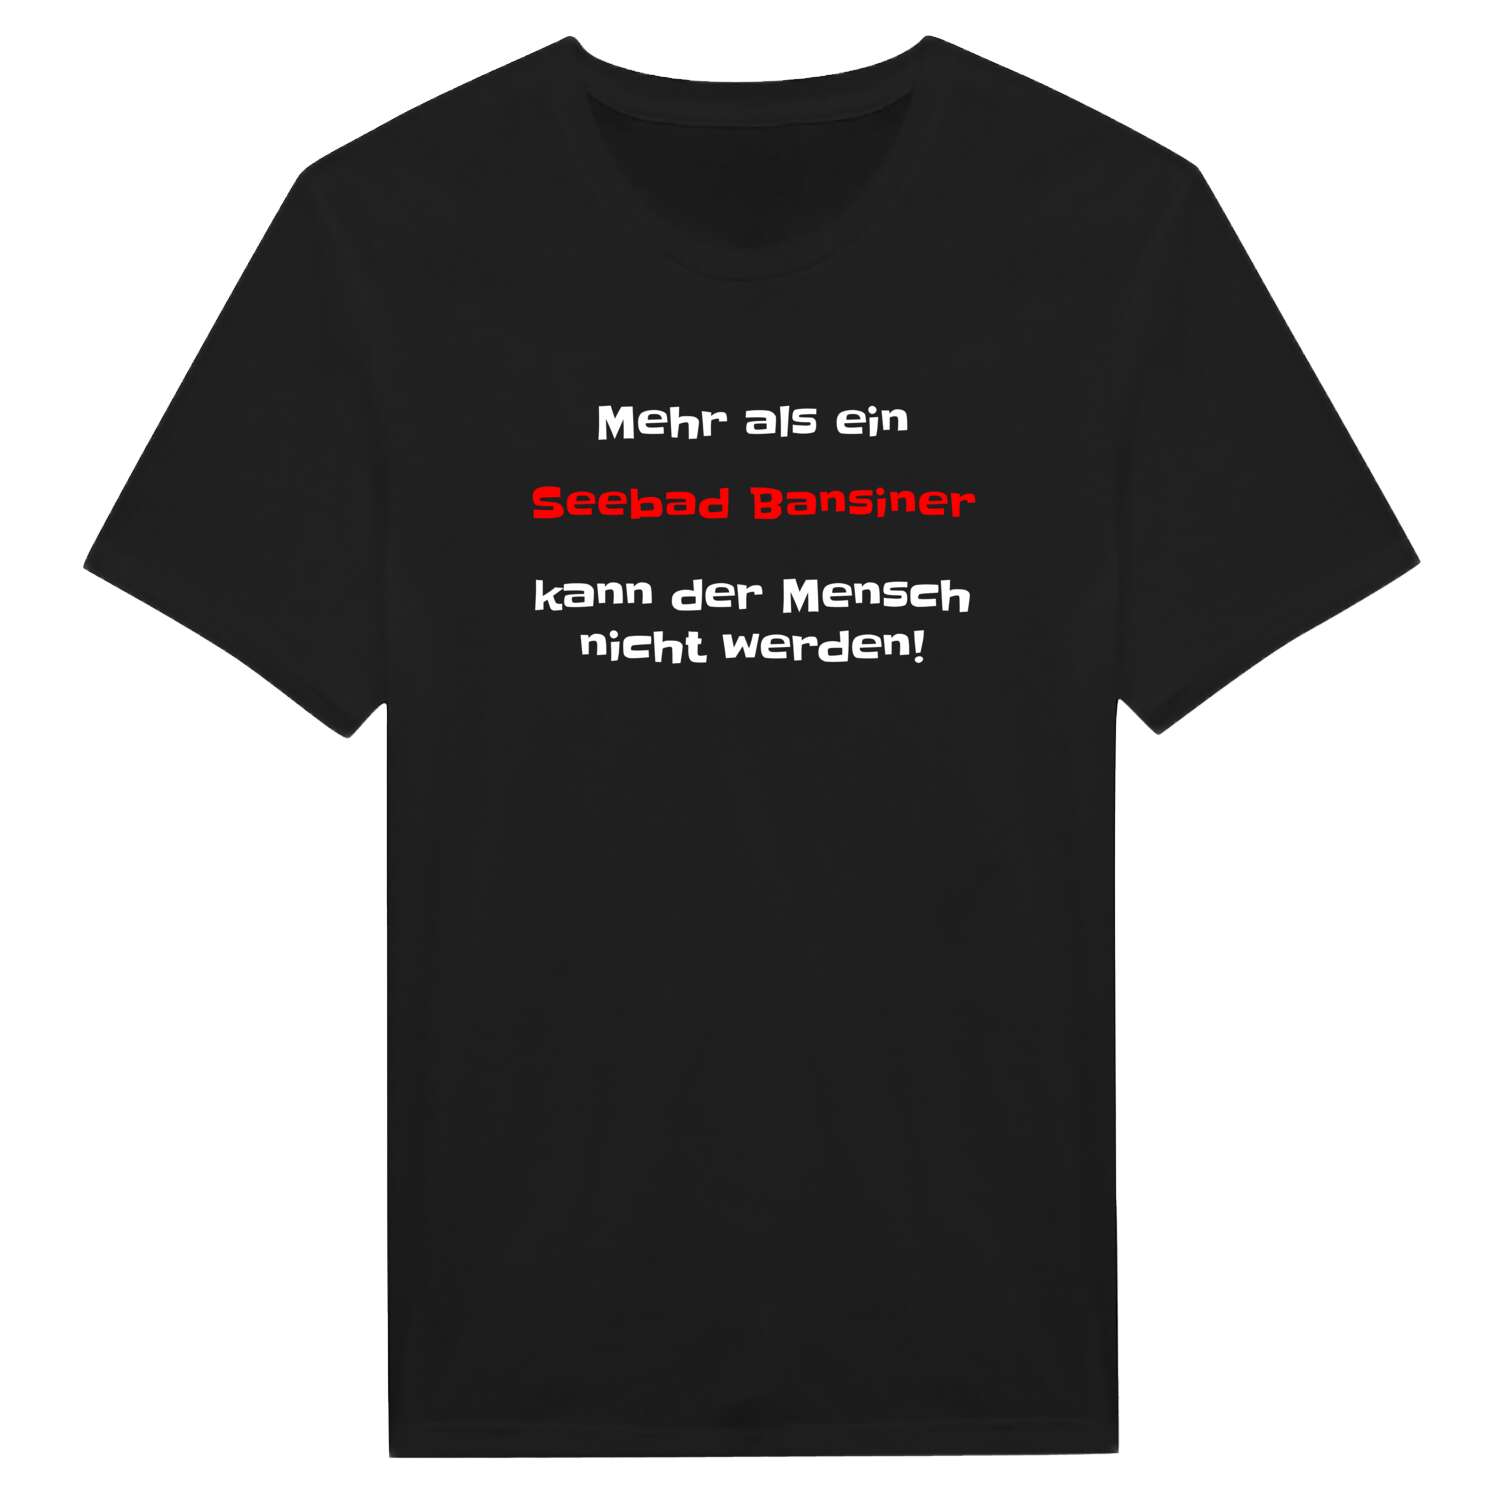 Seebad Bansin T-Shirt »Mehr als ein«